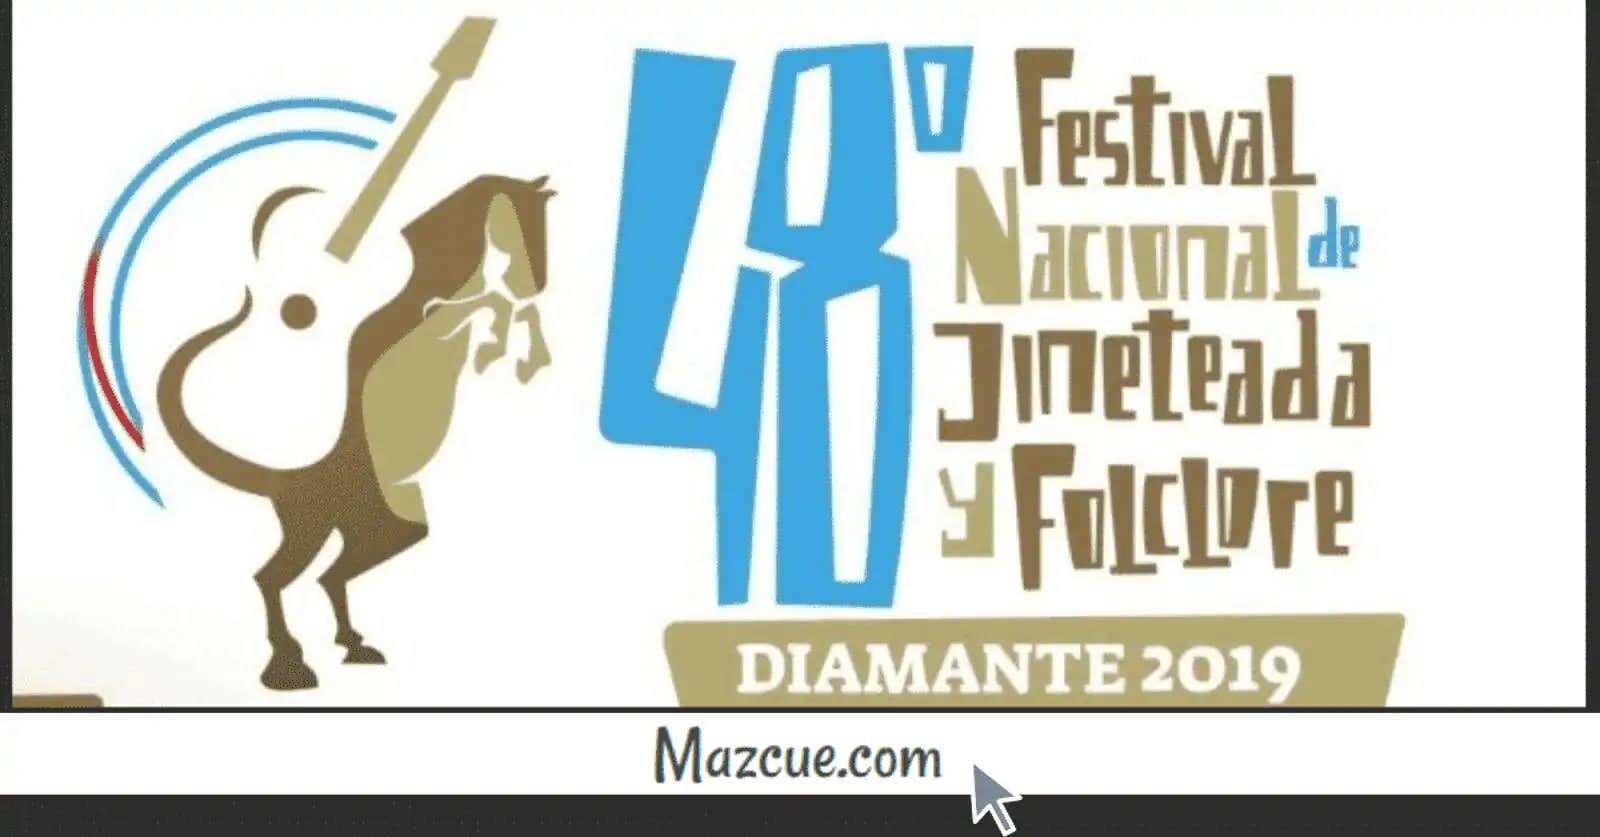 Festival Nacional de Jineteada y Folclore Diamante 2019